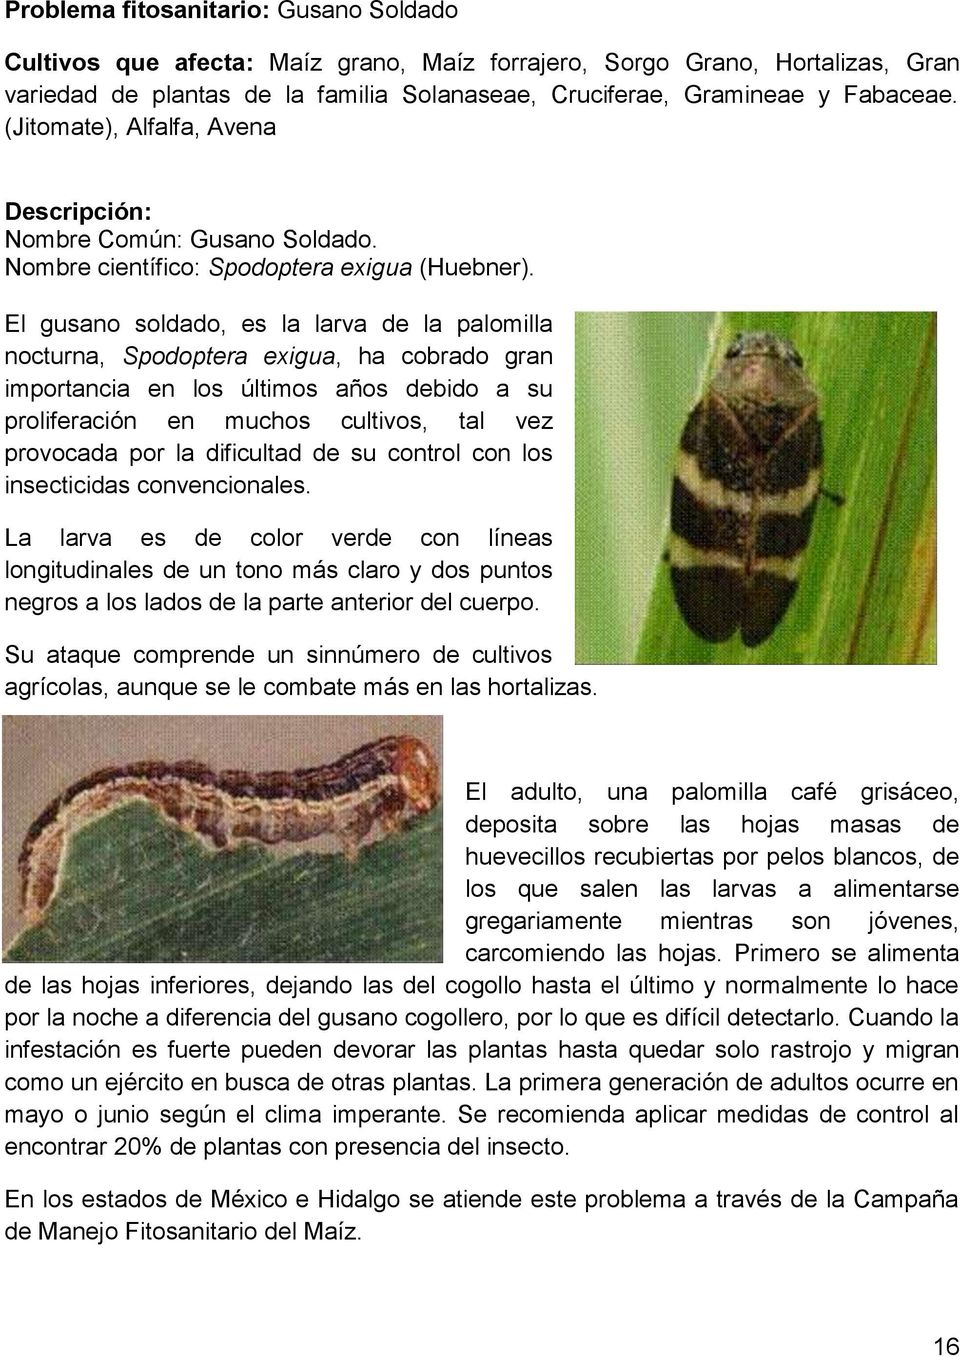 El gusano soldado, es la larva de la palomilla nocturna, Spodoptera exigua, ha cobrado gran importancia en los últimos años debido a su proliferación en muchos cultivos, tal vez provocada por la